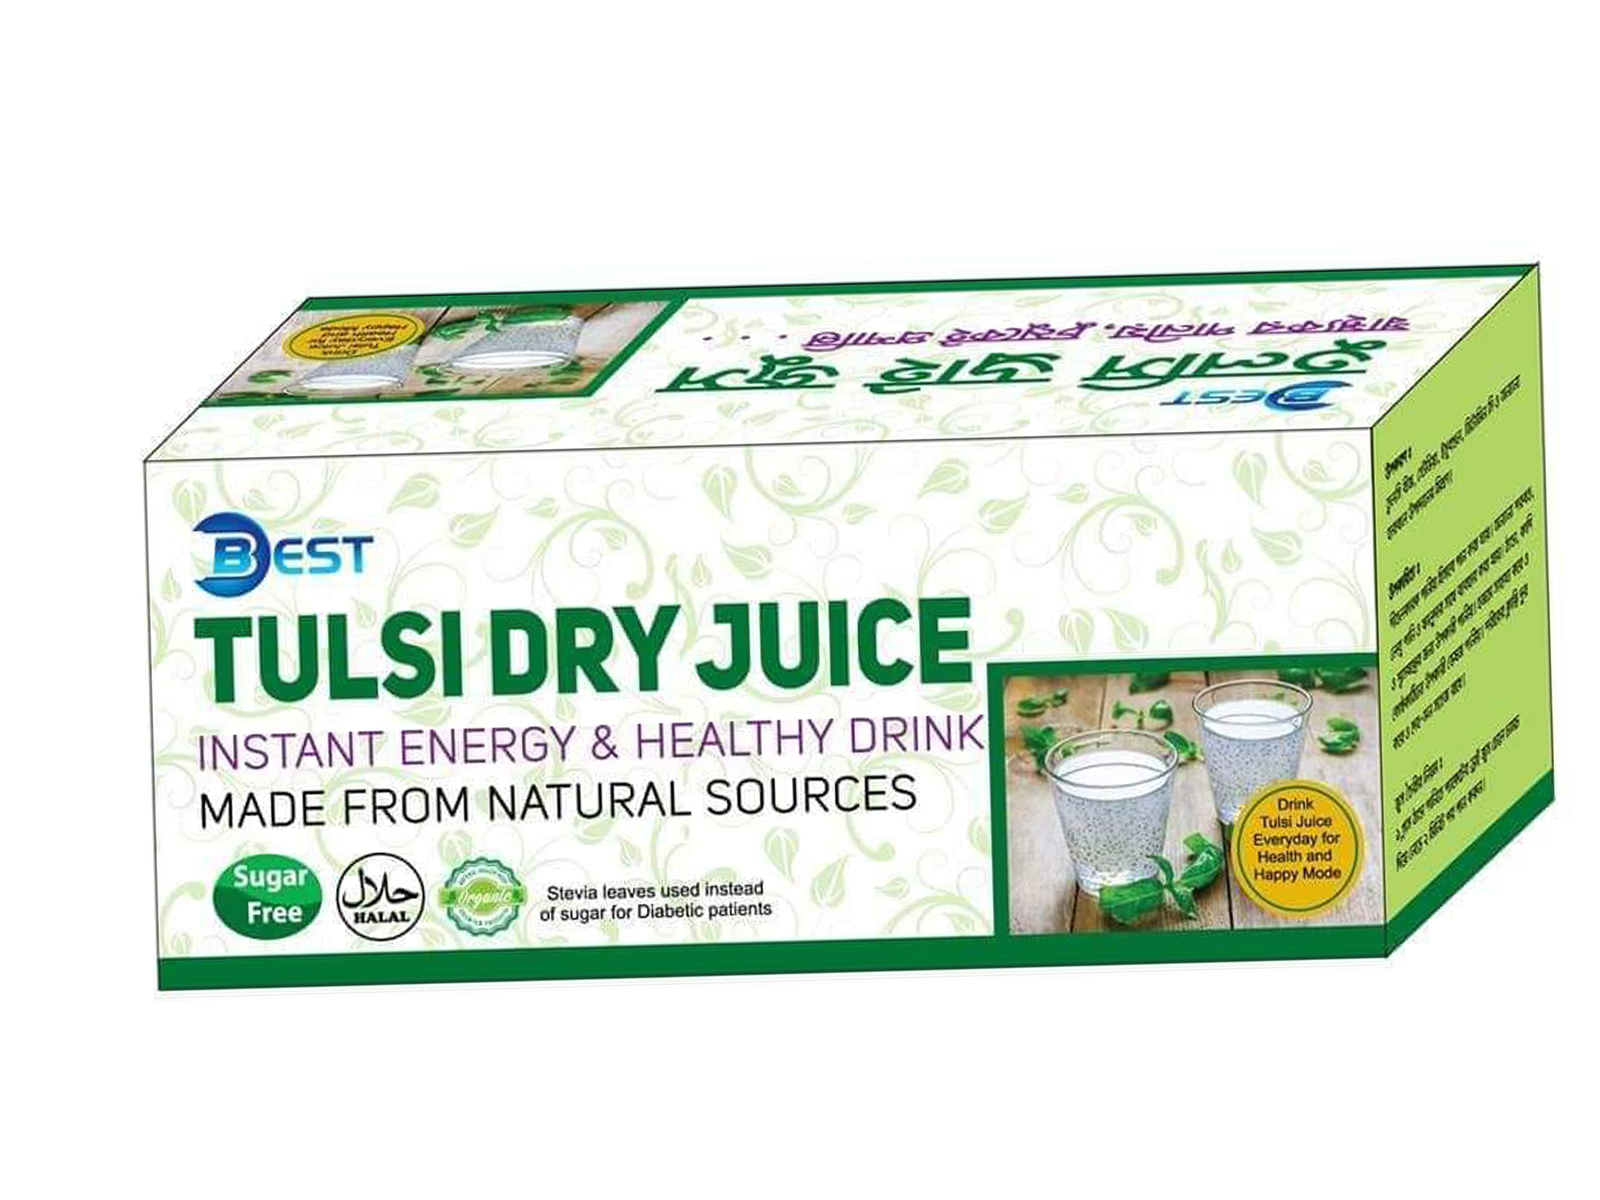 Tulsi Dry juice